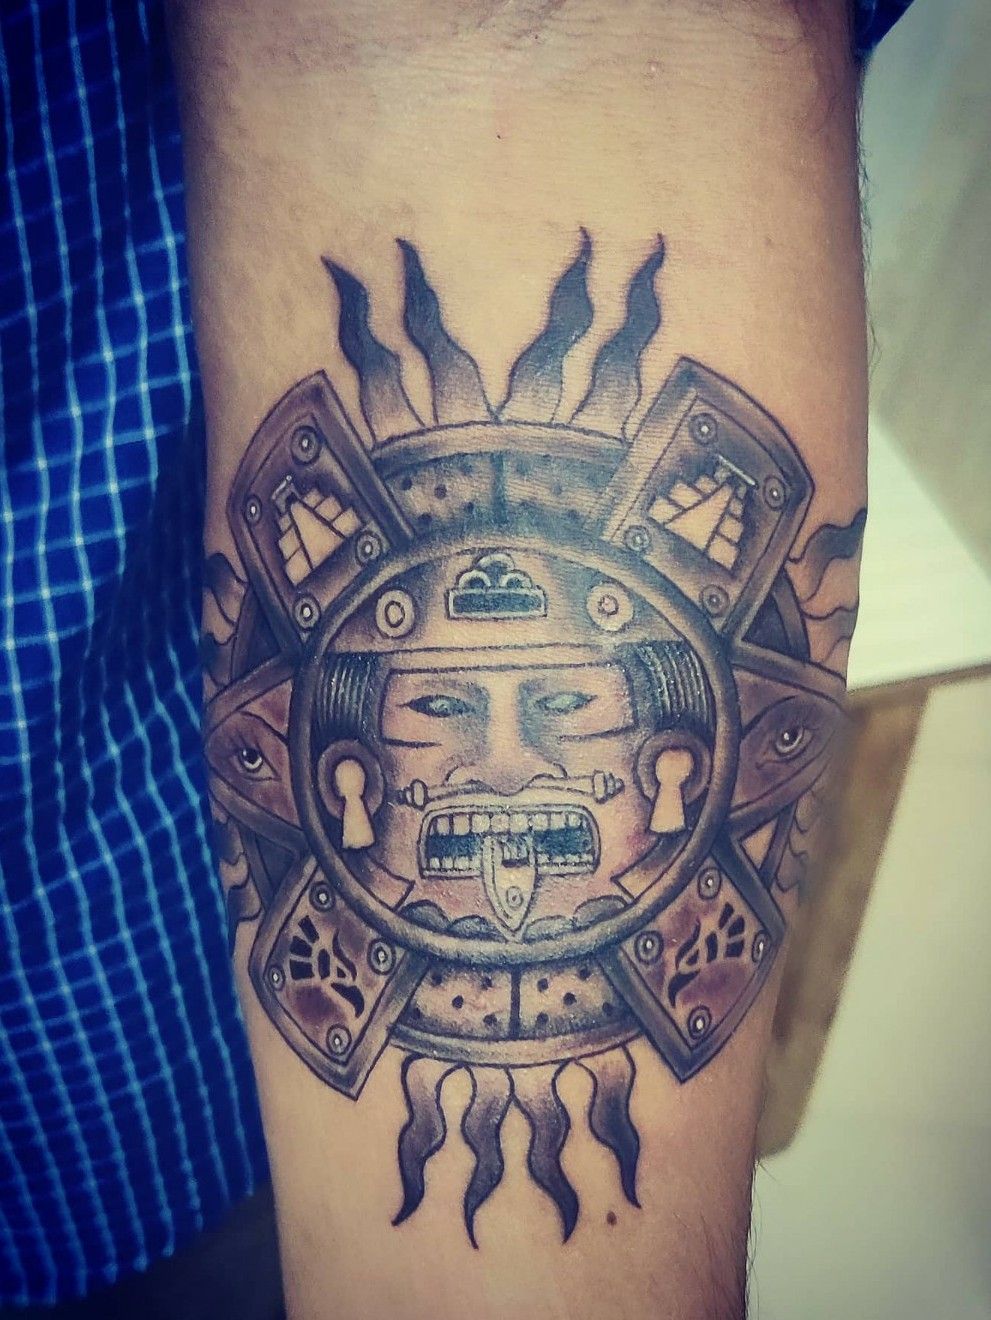 Tattoo @krrishnassalon #rajourigarden #rajourigardenmarket  #rajourigardenmainmarket#tattooartist #tattooart #tattoodelhi  #tattoorajouri… | Instagram